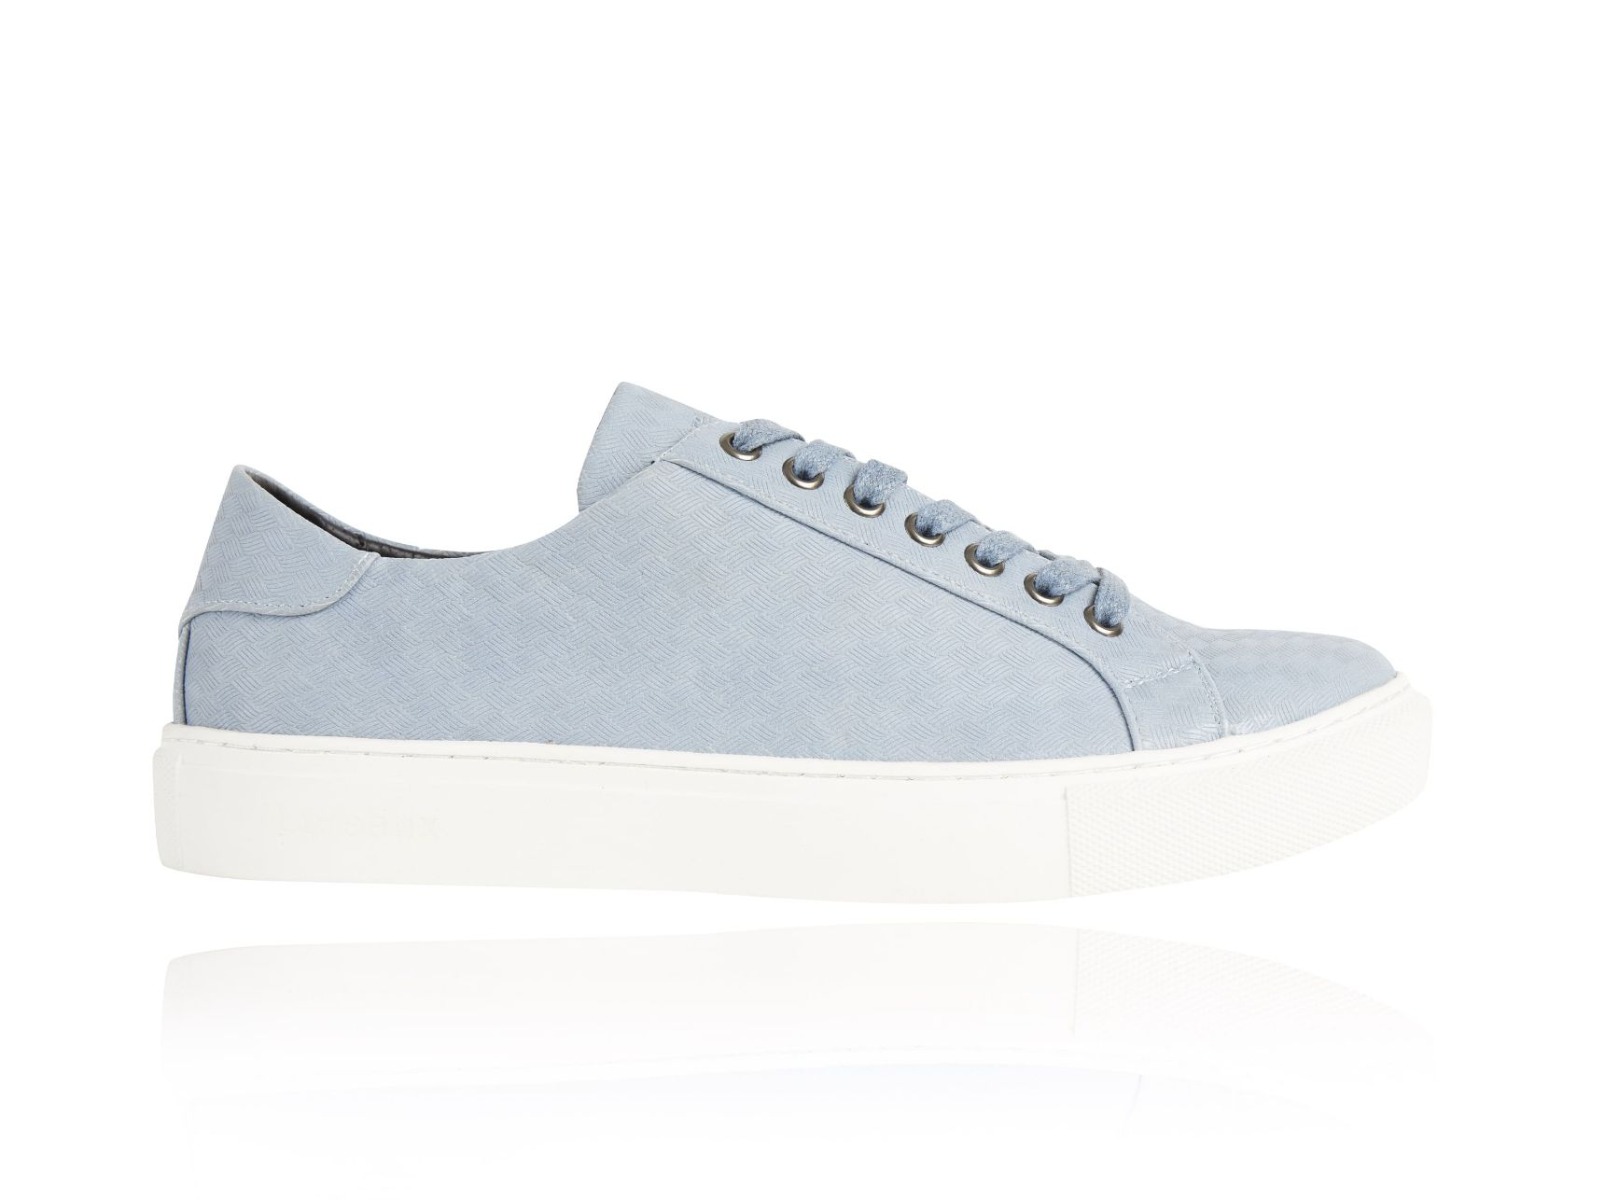 Woven Blue Sneakers - Lureaux - Handgemaakte Nette Schoenen Voor Heren